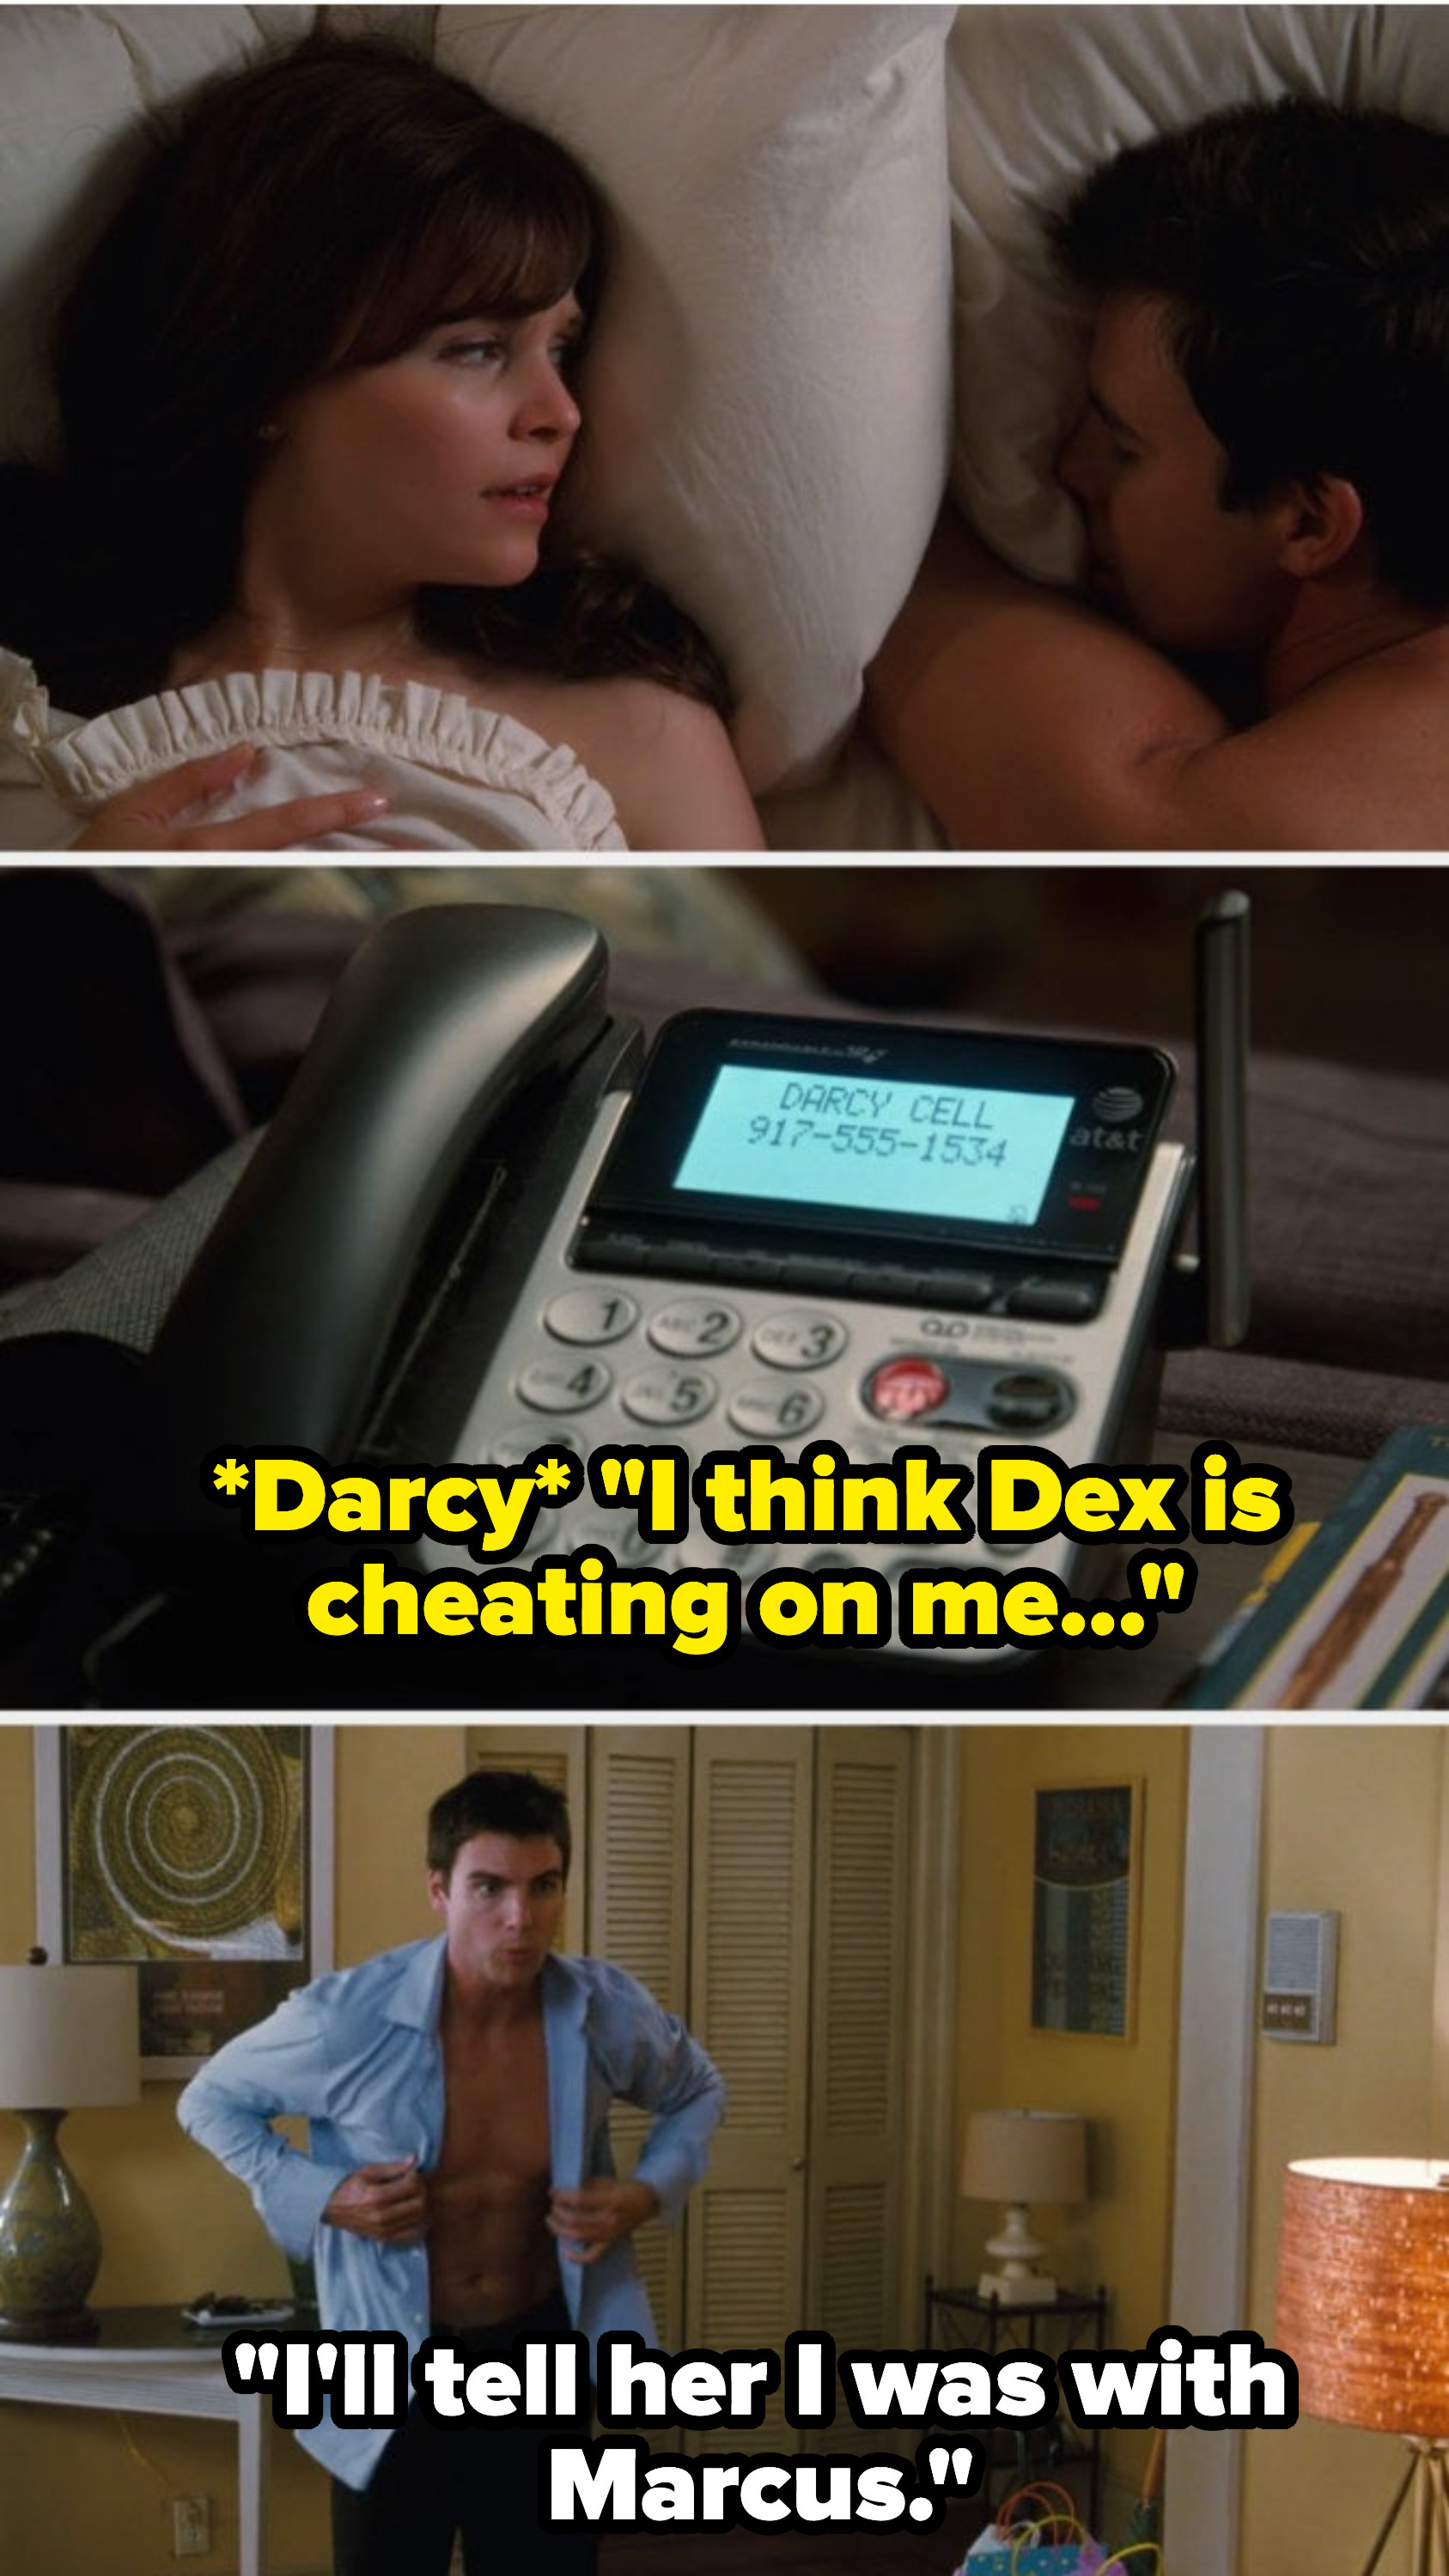 Dex和Rachel一起在床上醒来，Darcy留下语音邮件说她认为Dex出轨了，Dex向Rachel保证他会告诉她他和他的朋友Marcus在一起。